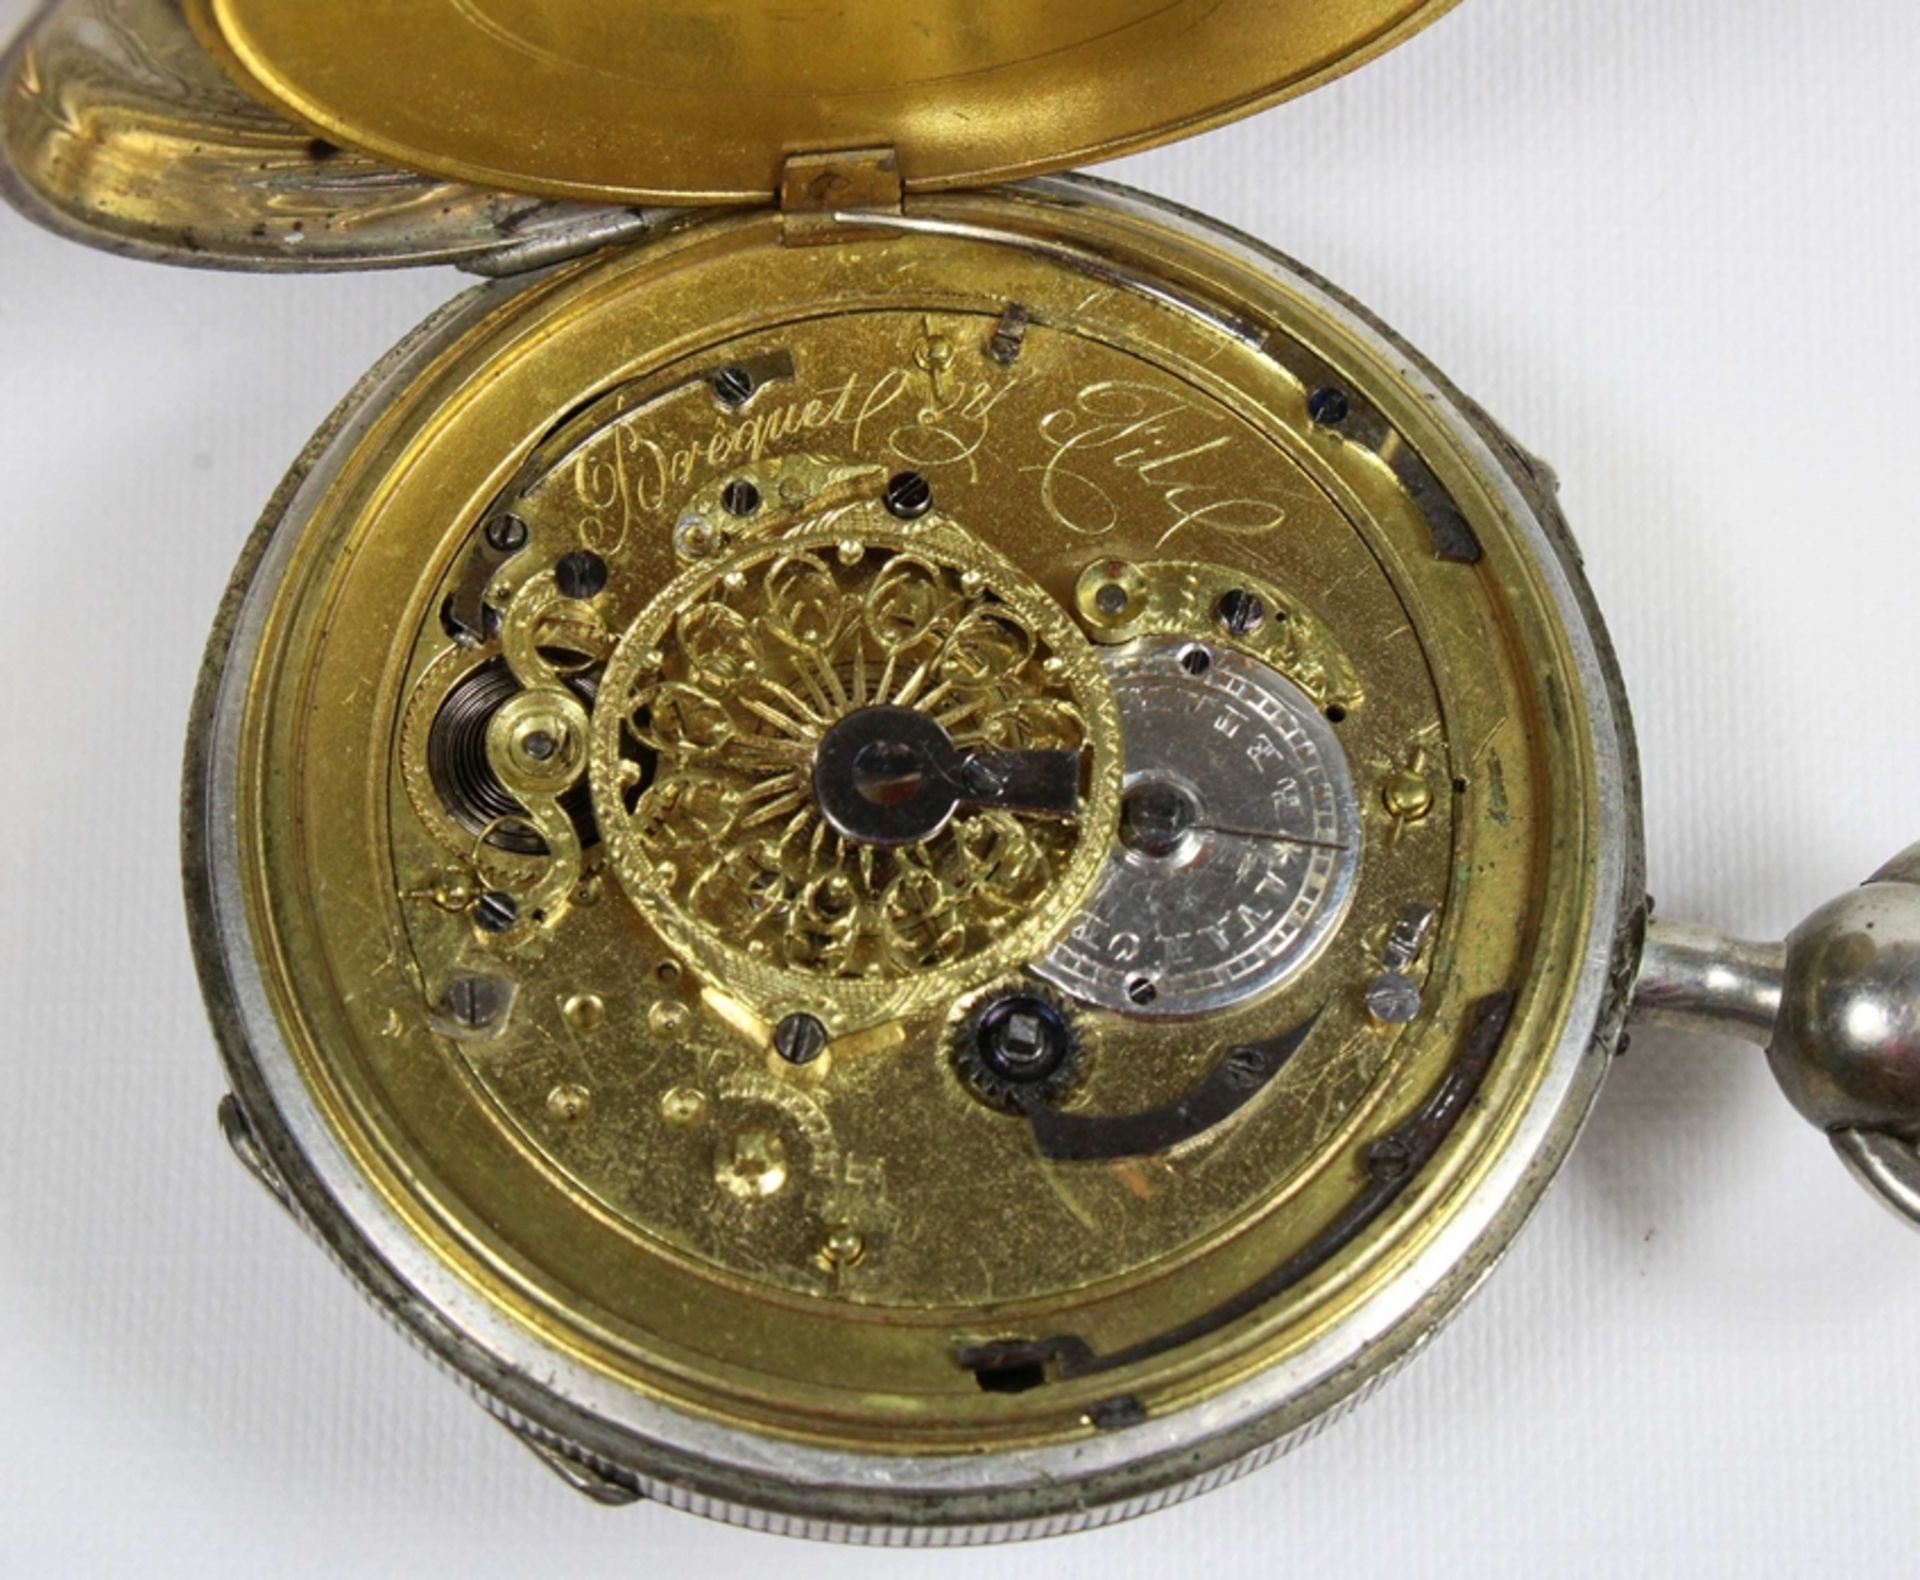 Breguet et fils Schlüsseluhr, 19. Jh., Silber, aufwendig ziseliert und verziert, Uhrwerk bez. Bregu - Image 3 of 5